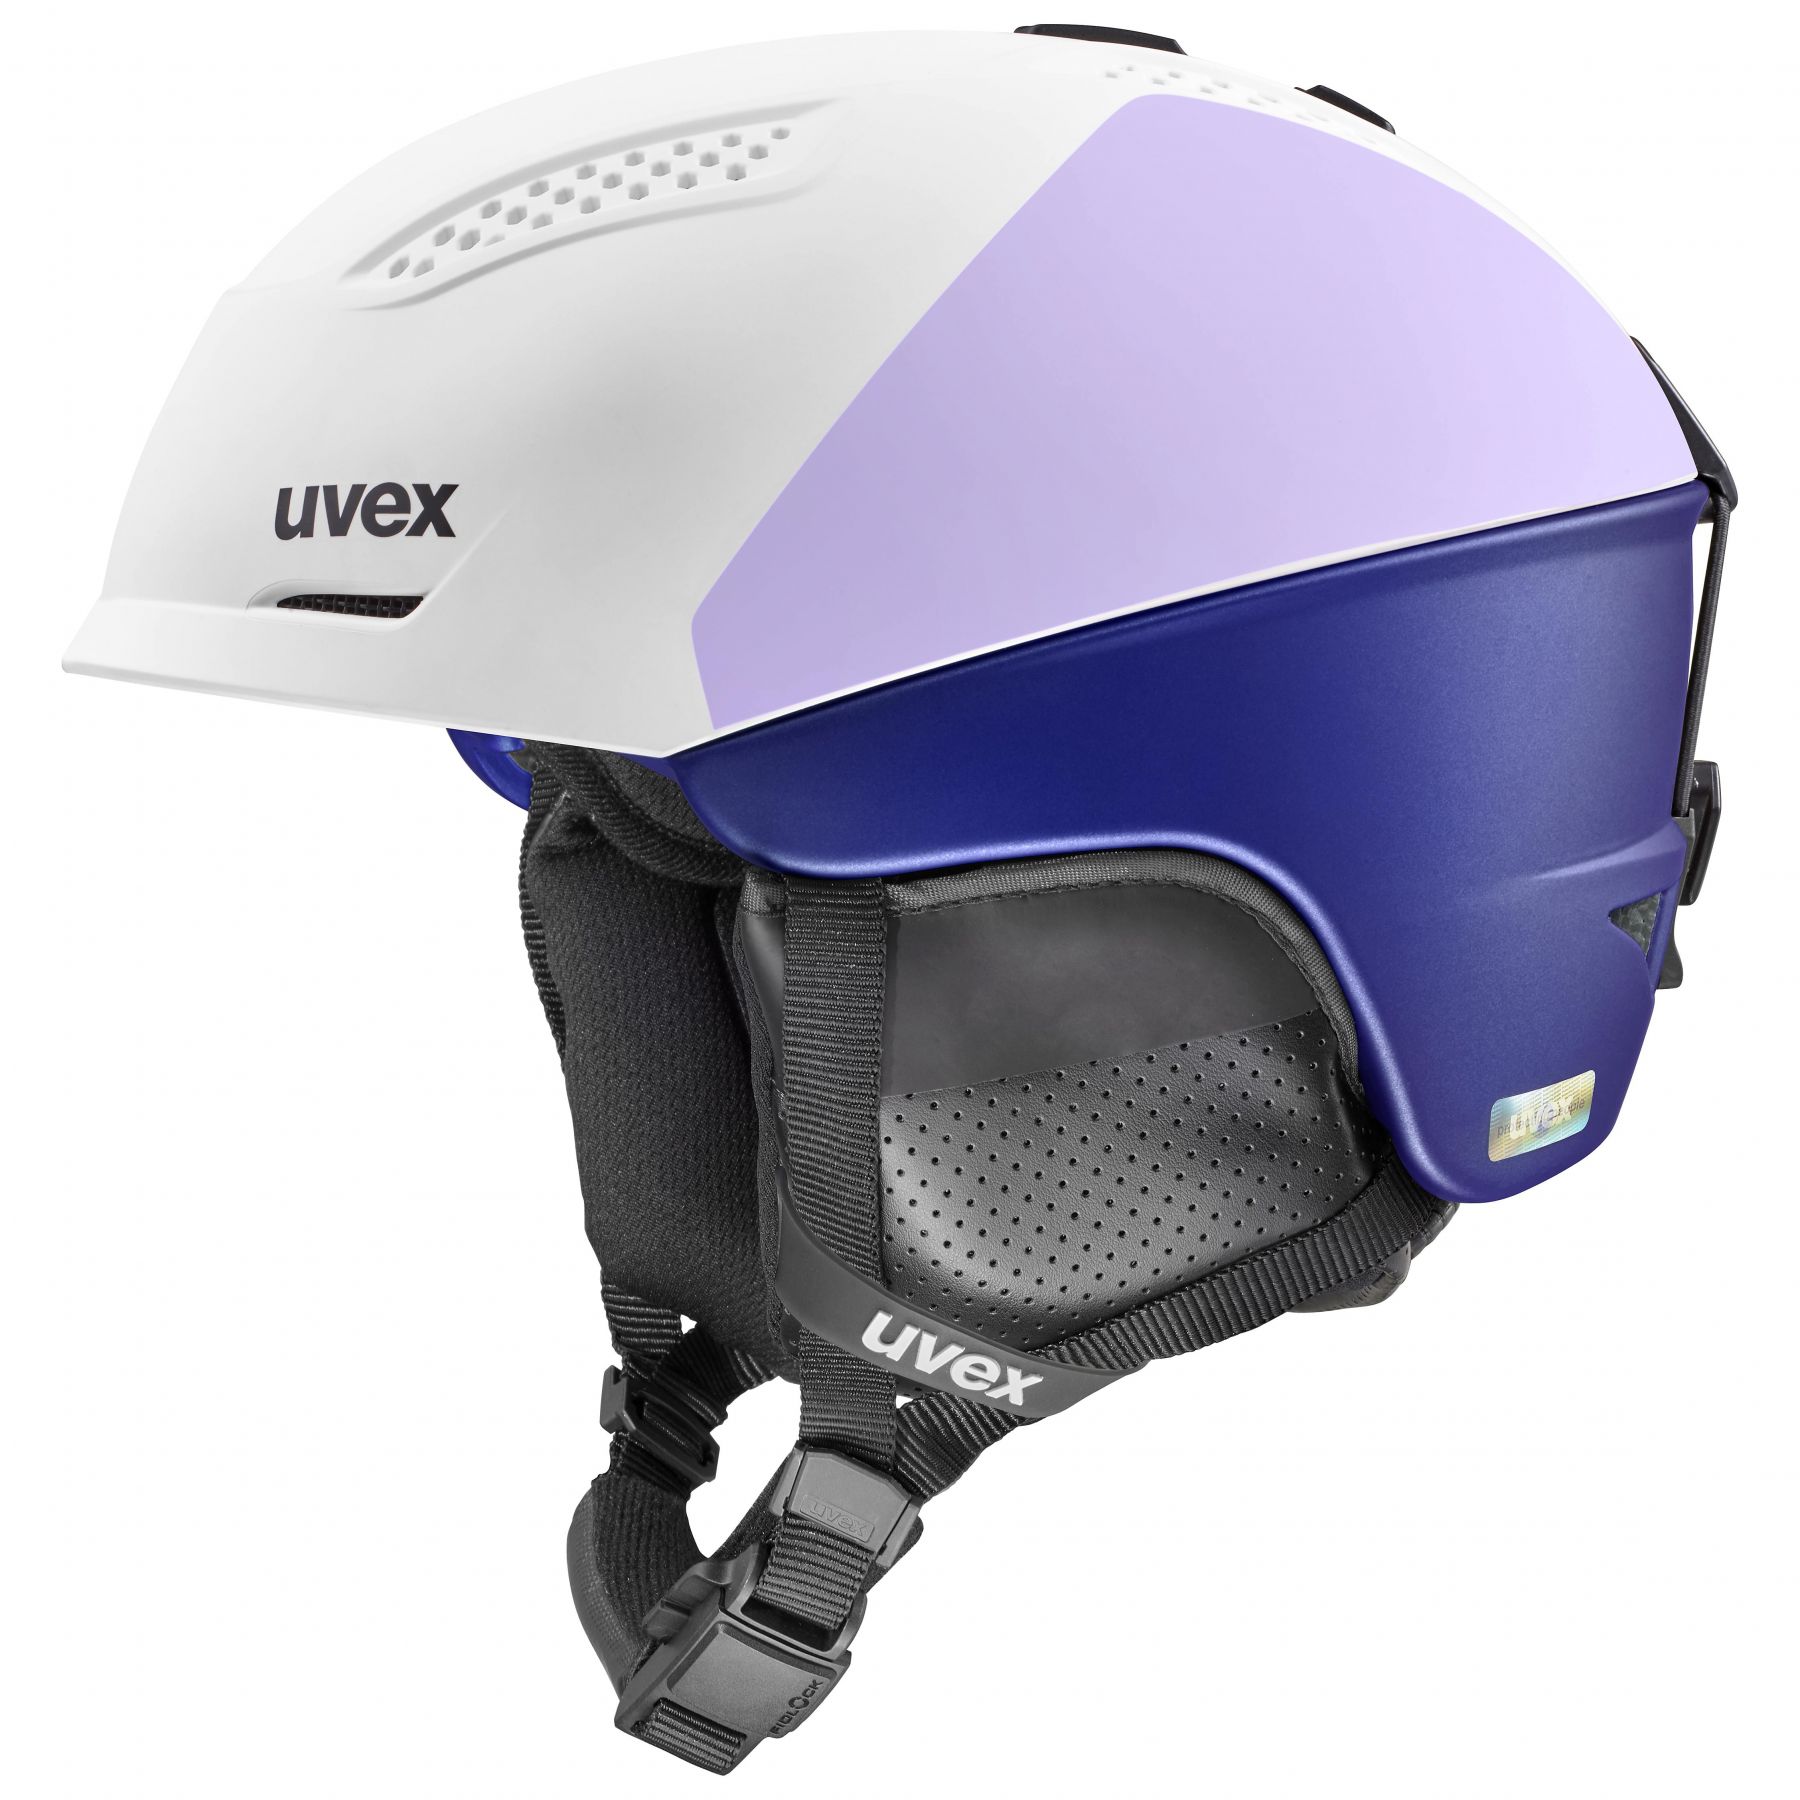 Billede af Uvex Ultra Pro, skihjelm, dame, hvid/lilla hos Skisport.dk